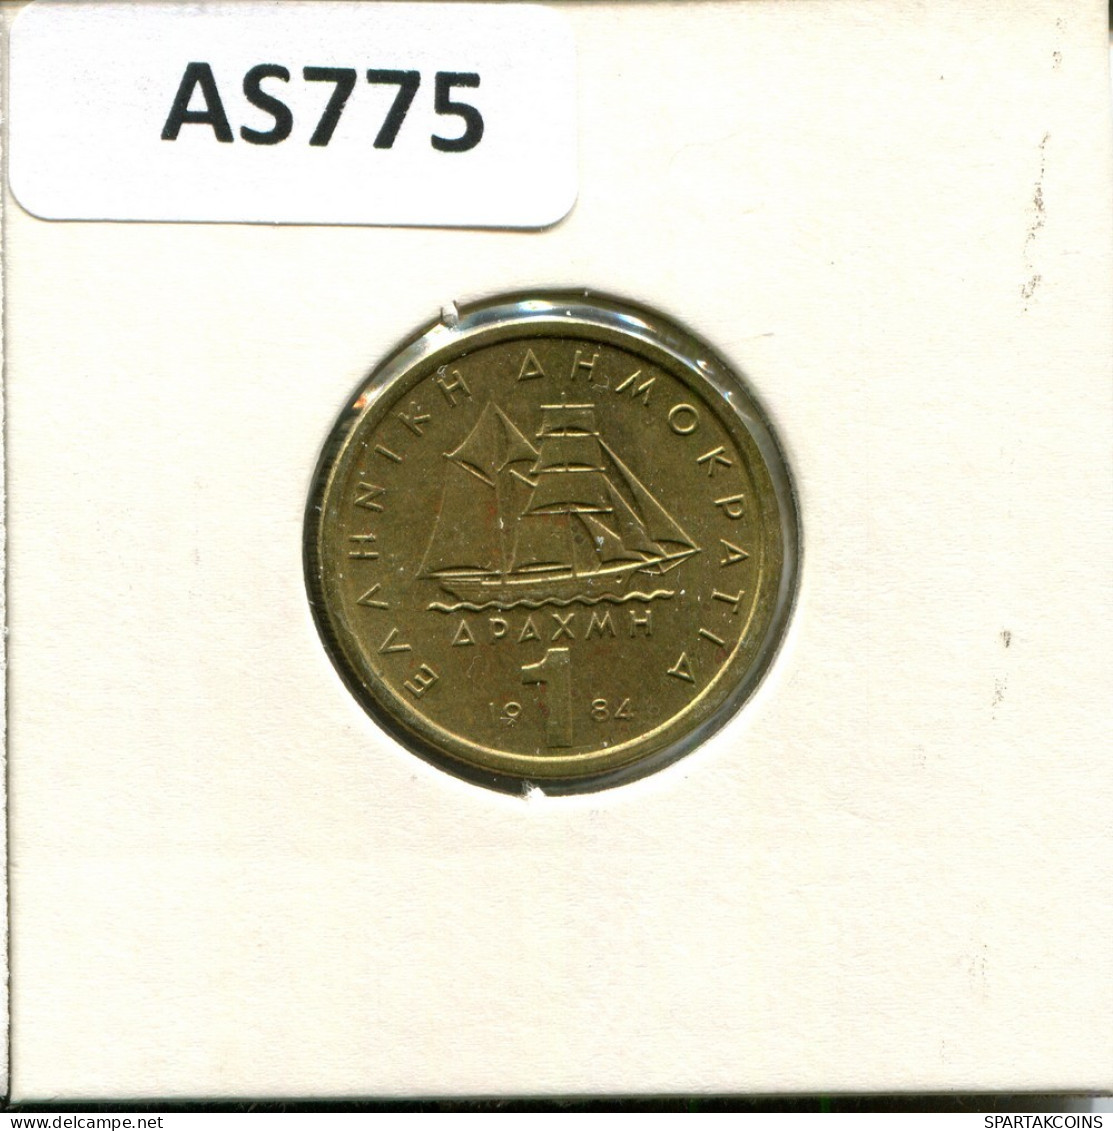 1 DRACHMA 1984 GRECIA GREECE Moneda #AS775.E.A - Grecia